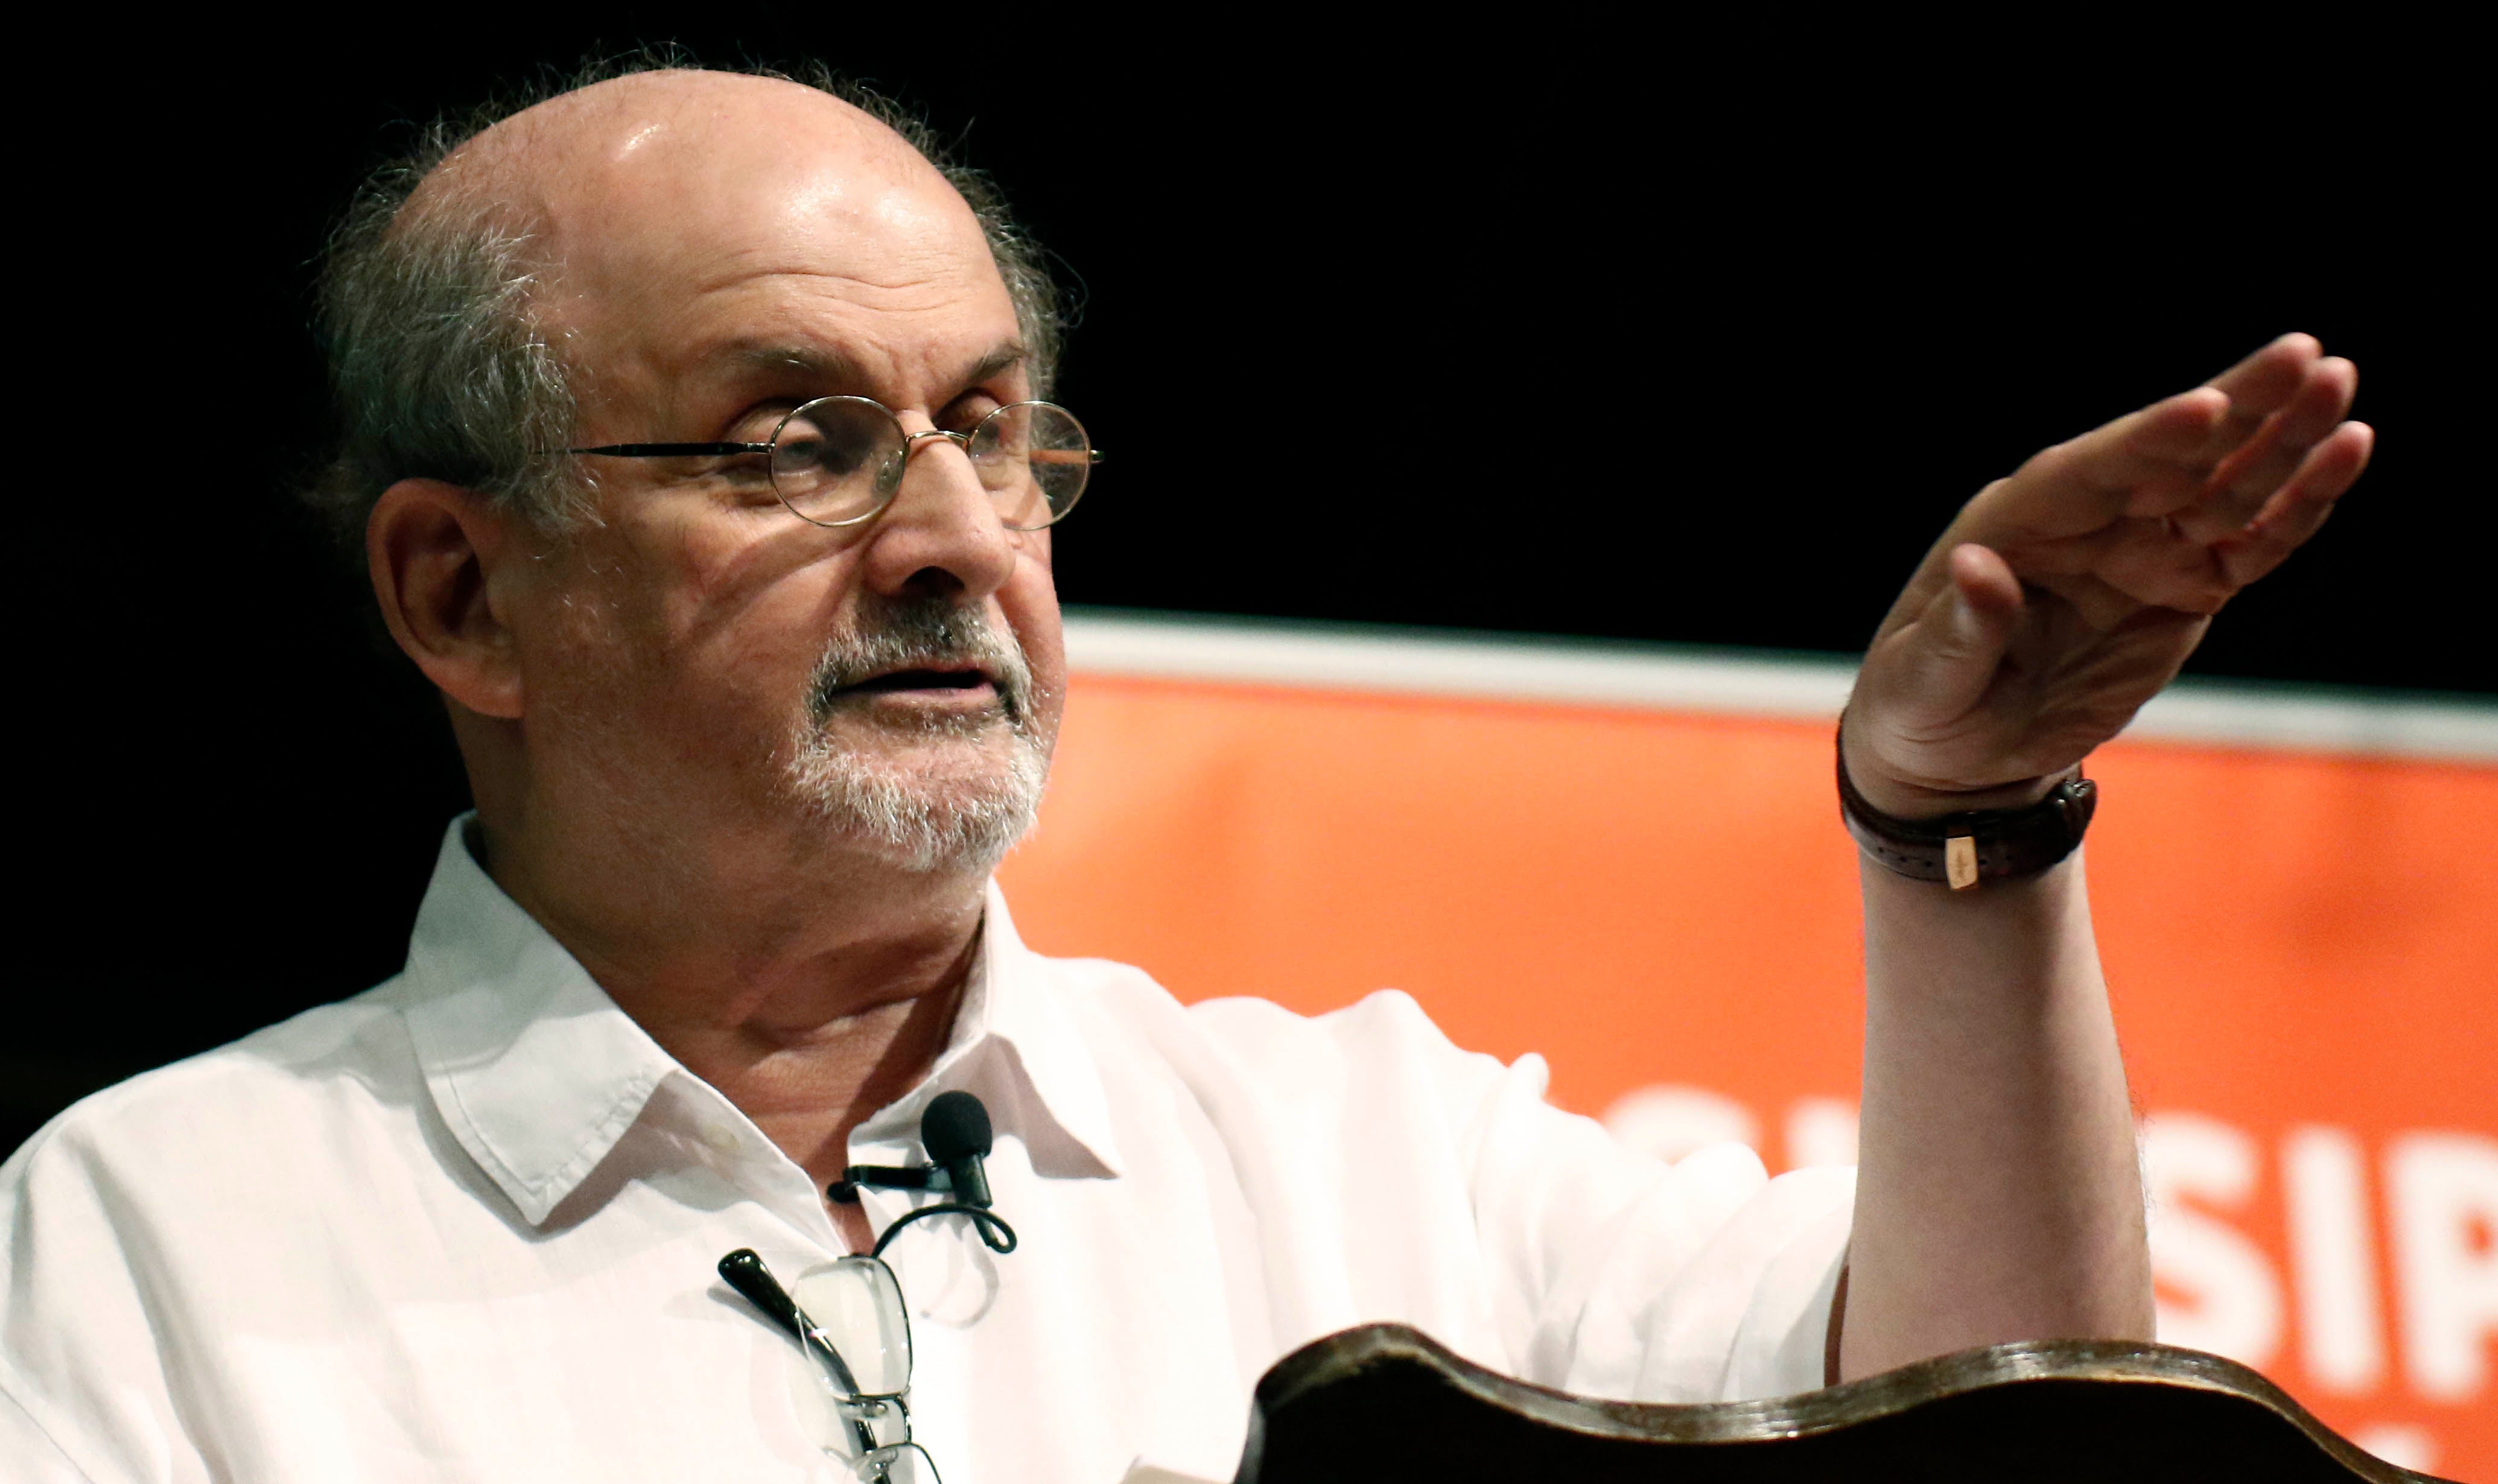 El autor Salman Rushdie habla sobre el inicio de su carrera como escritor, durante el Festival del Libro de Mississippi, en Jackson, Mississippi, el 18 de agosto de 2018